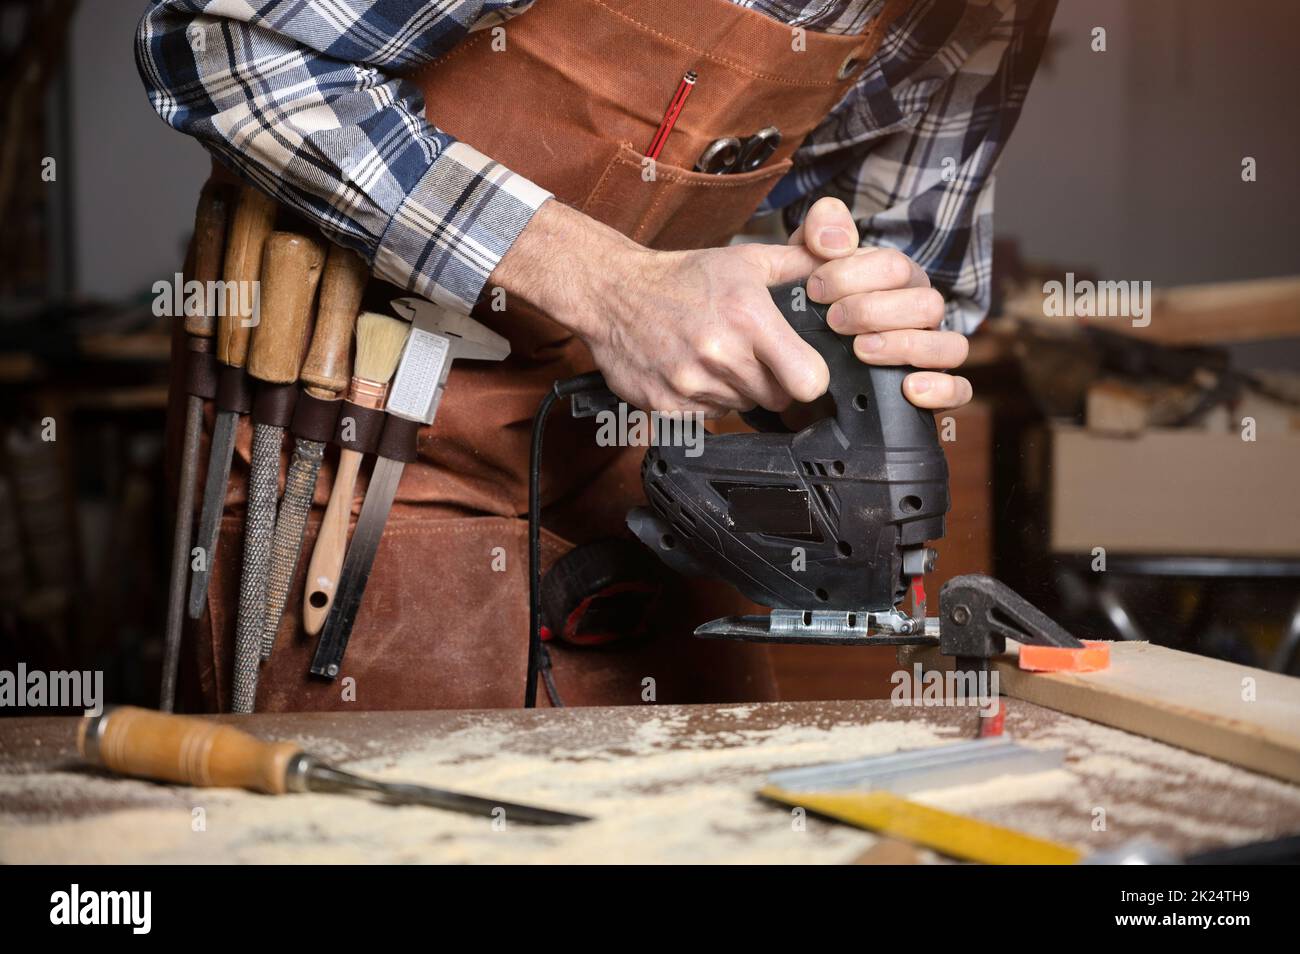 Zimmermann sägt in der Schreinerei eine Holzdiele mit elektrischer Stichsägemaschine. Arbeitholz DIY Konzept. Hochwertige Fotografie. Stockfoto